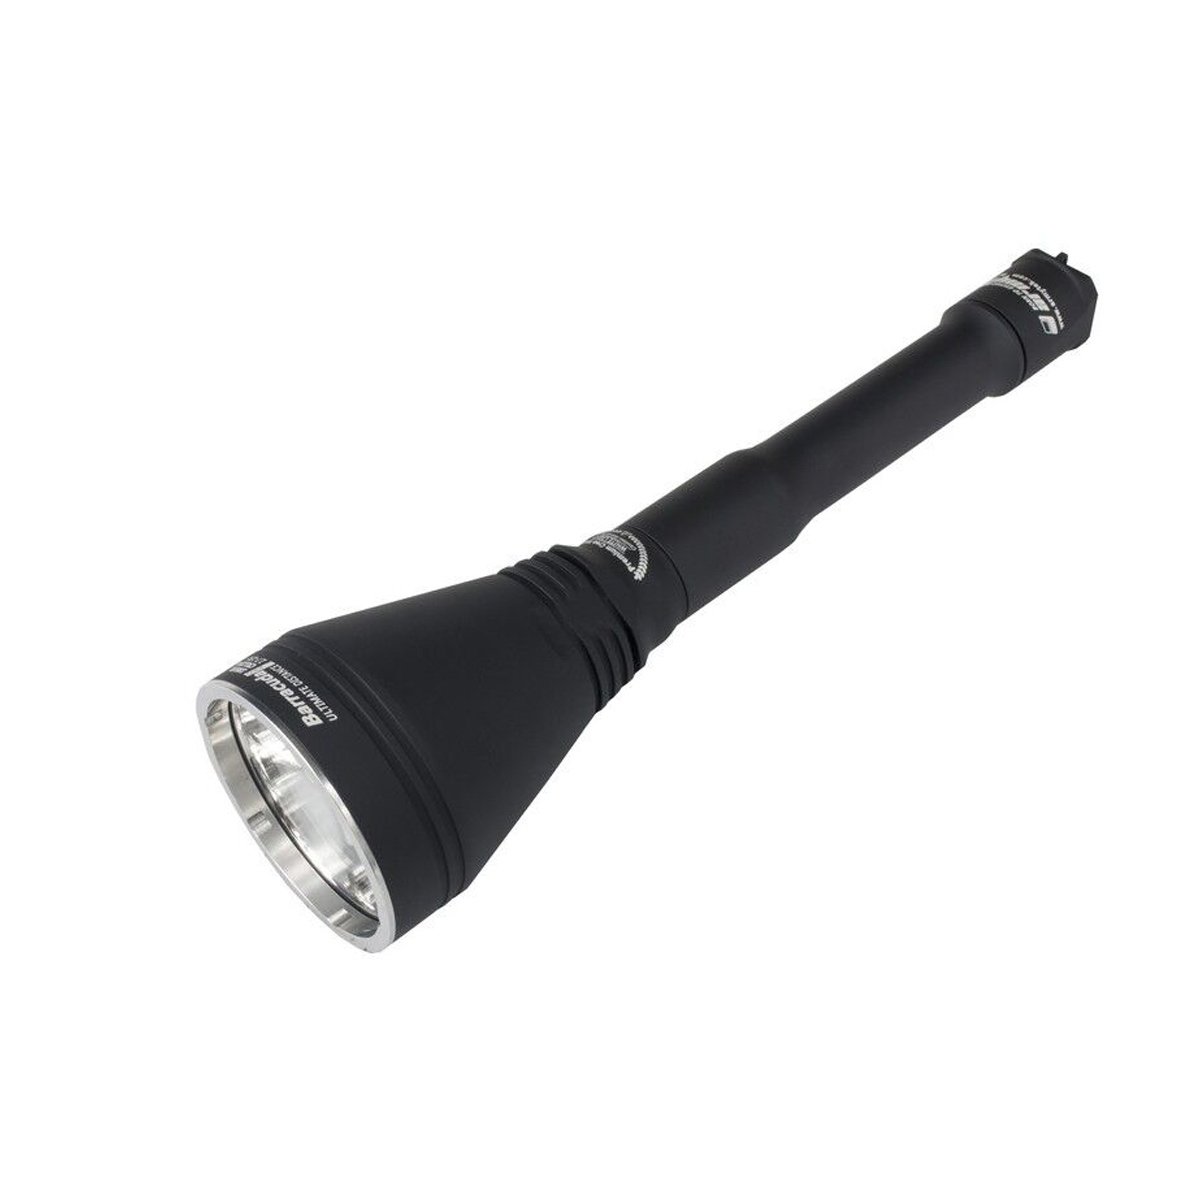 Armytek Barracuda Pro v2 Taschenlampe warmweiß 1390 LED Lumen bis zu 771 Meter 10 Jahre Garantie taktischer Suchscheinwerfer LED Lampe Wasserdicht nach IP68 für härteste Einsätze